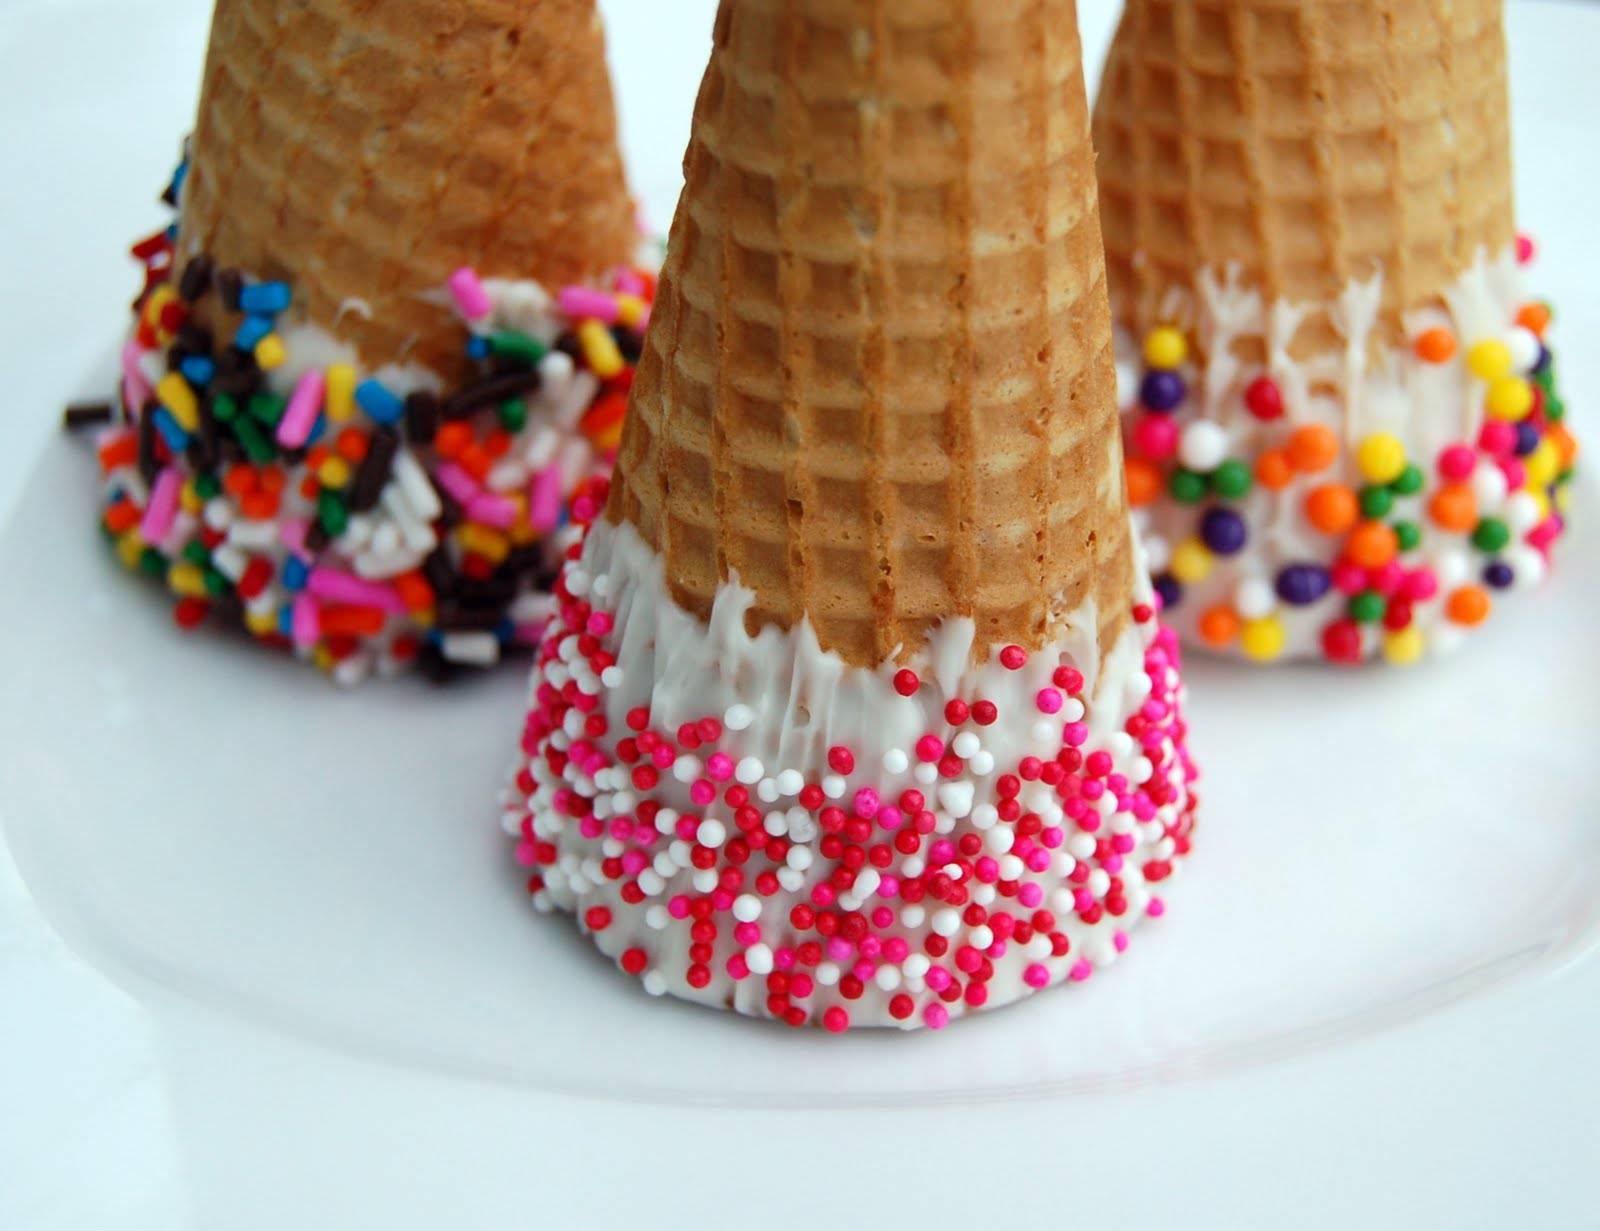 ice cream cones ice cream wallpaper ice cream cones sprinkled